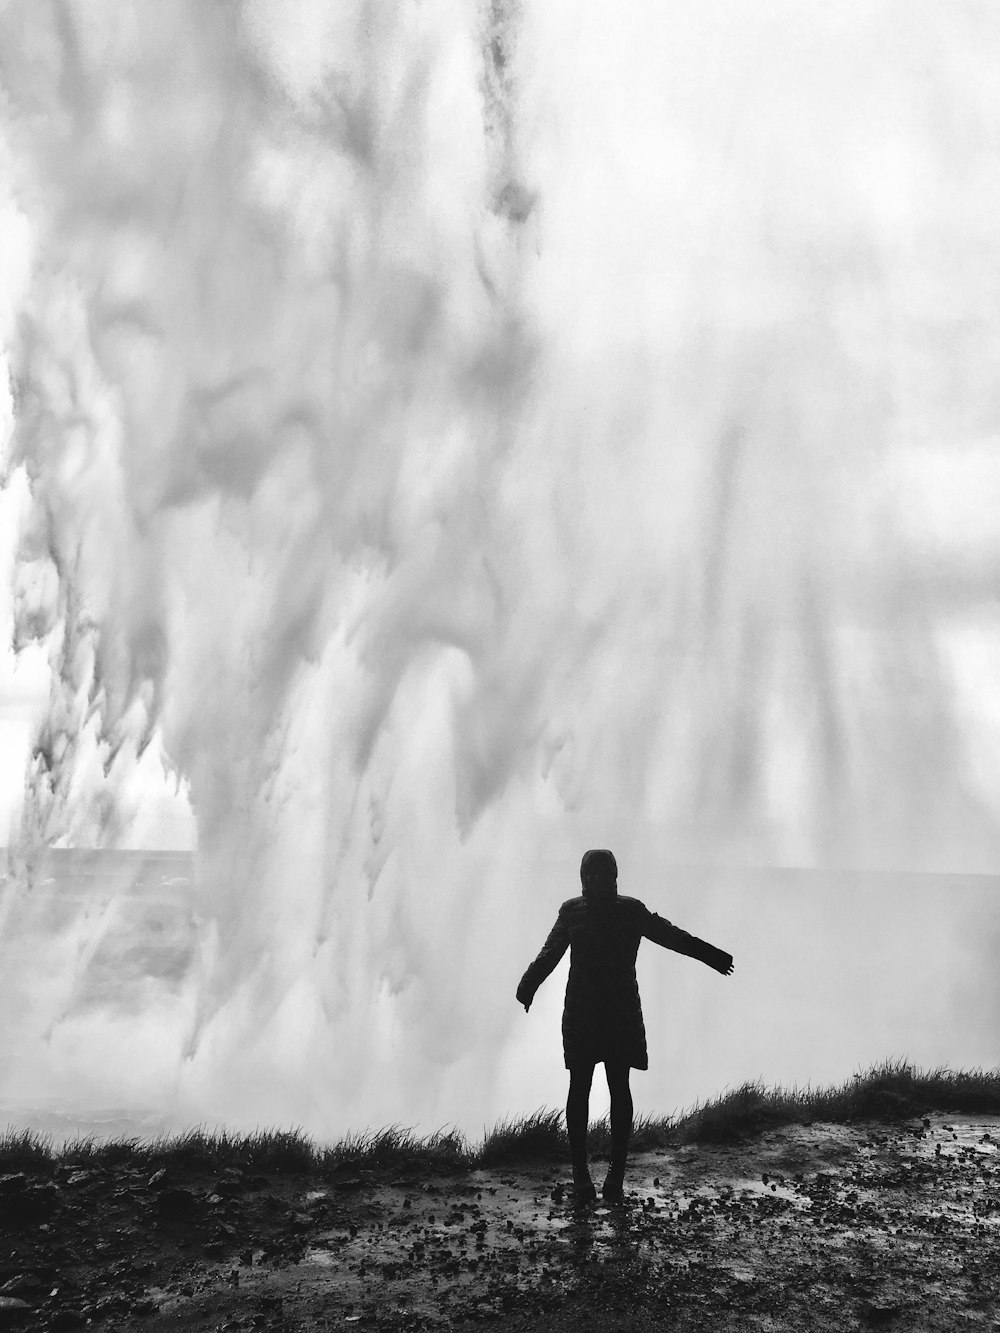 fotografia in scala di grigi di una persona in piedi davanti alle onde d'acqua che spruzzi